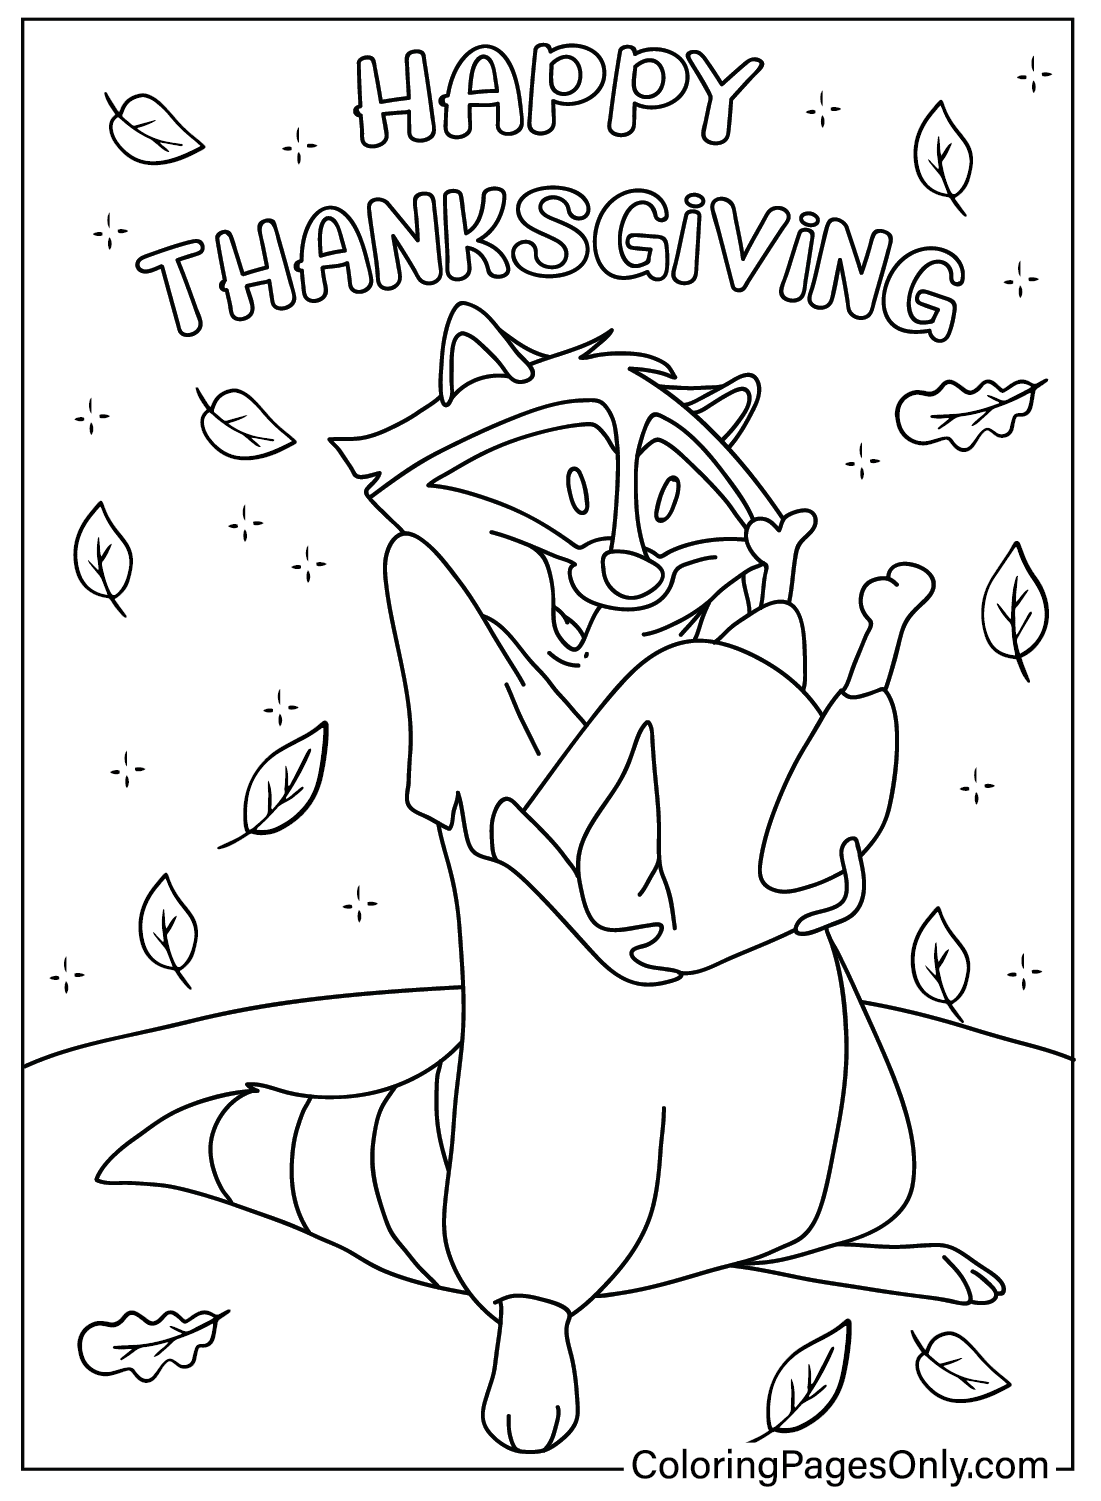 Página para colorir do Dia de Ação de Graças da Disney Meeko do Dia de Ação de Graças da Disney